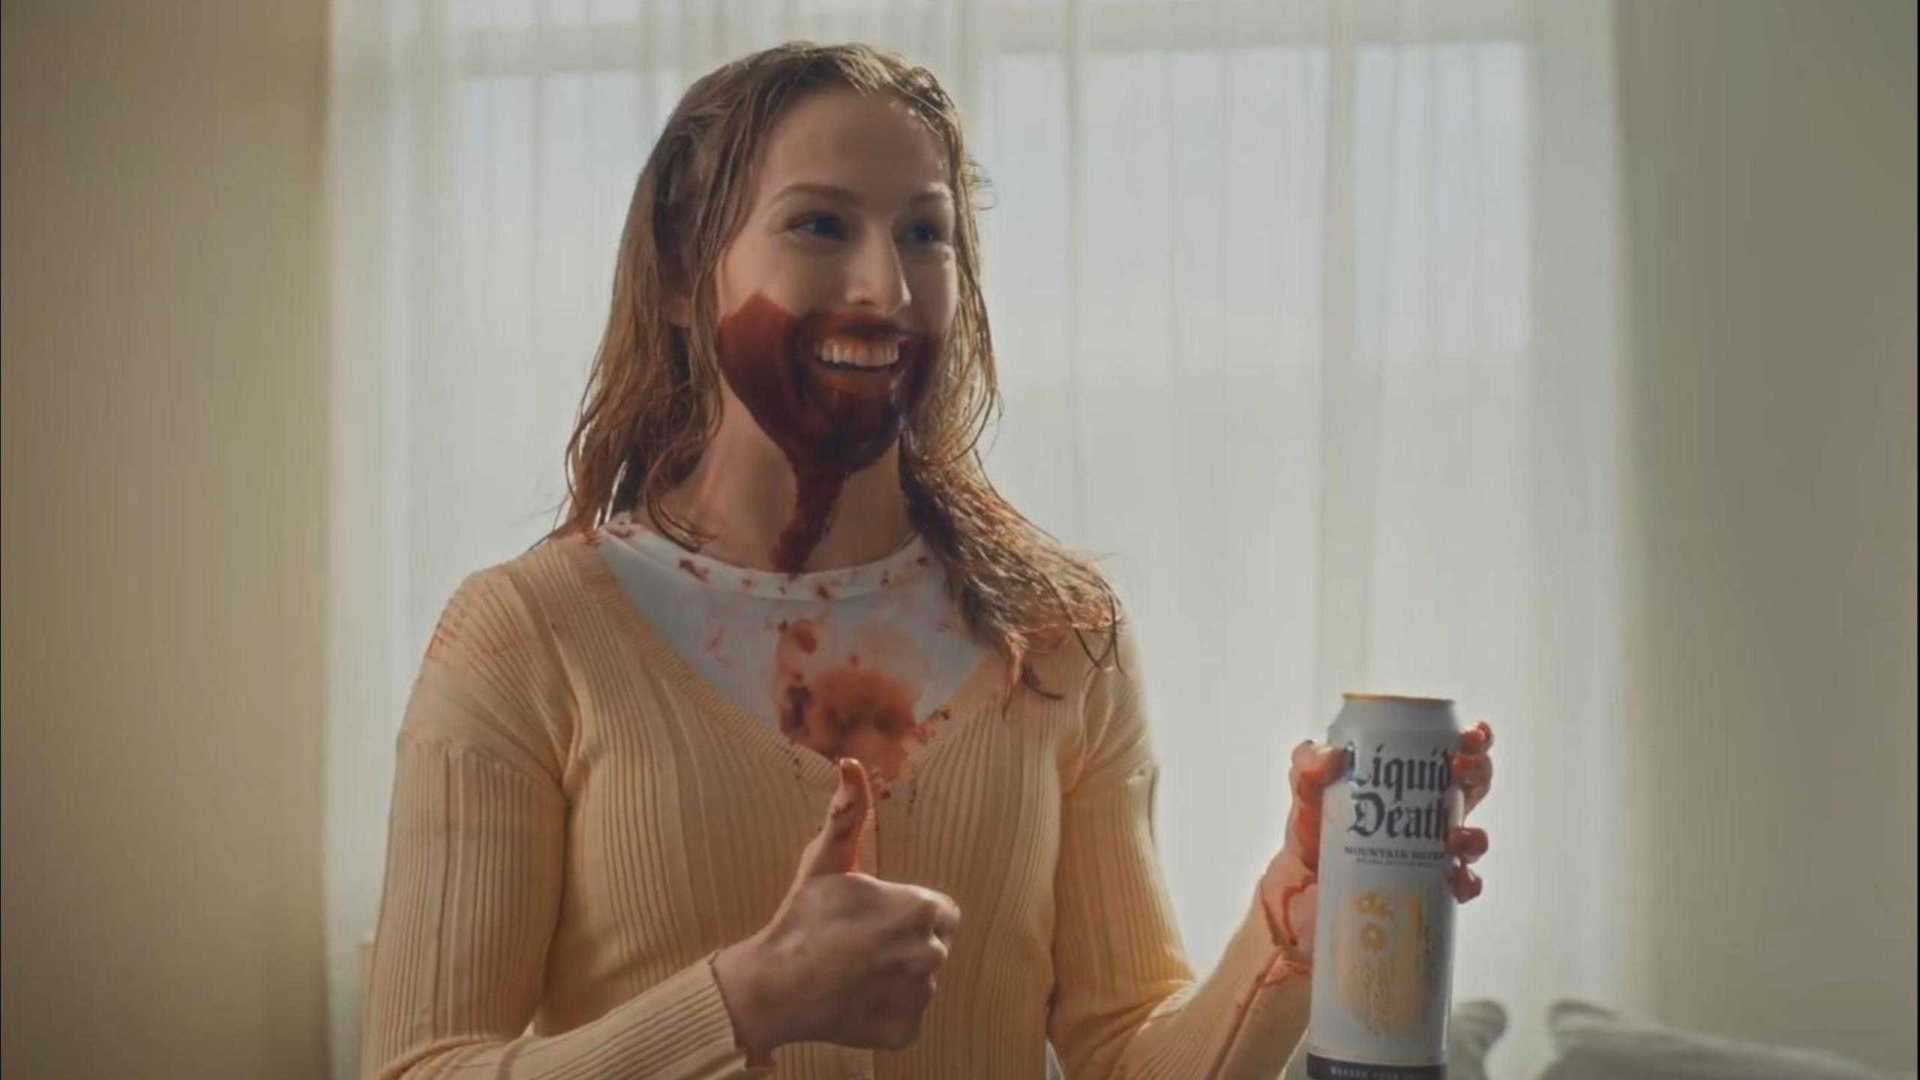 这个饮料广告有点恐怖！看完你敢喝吗